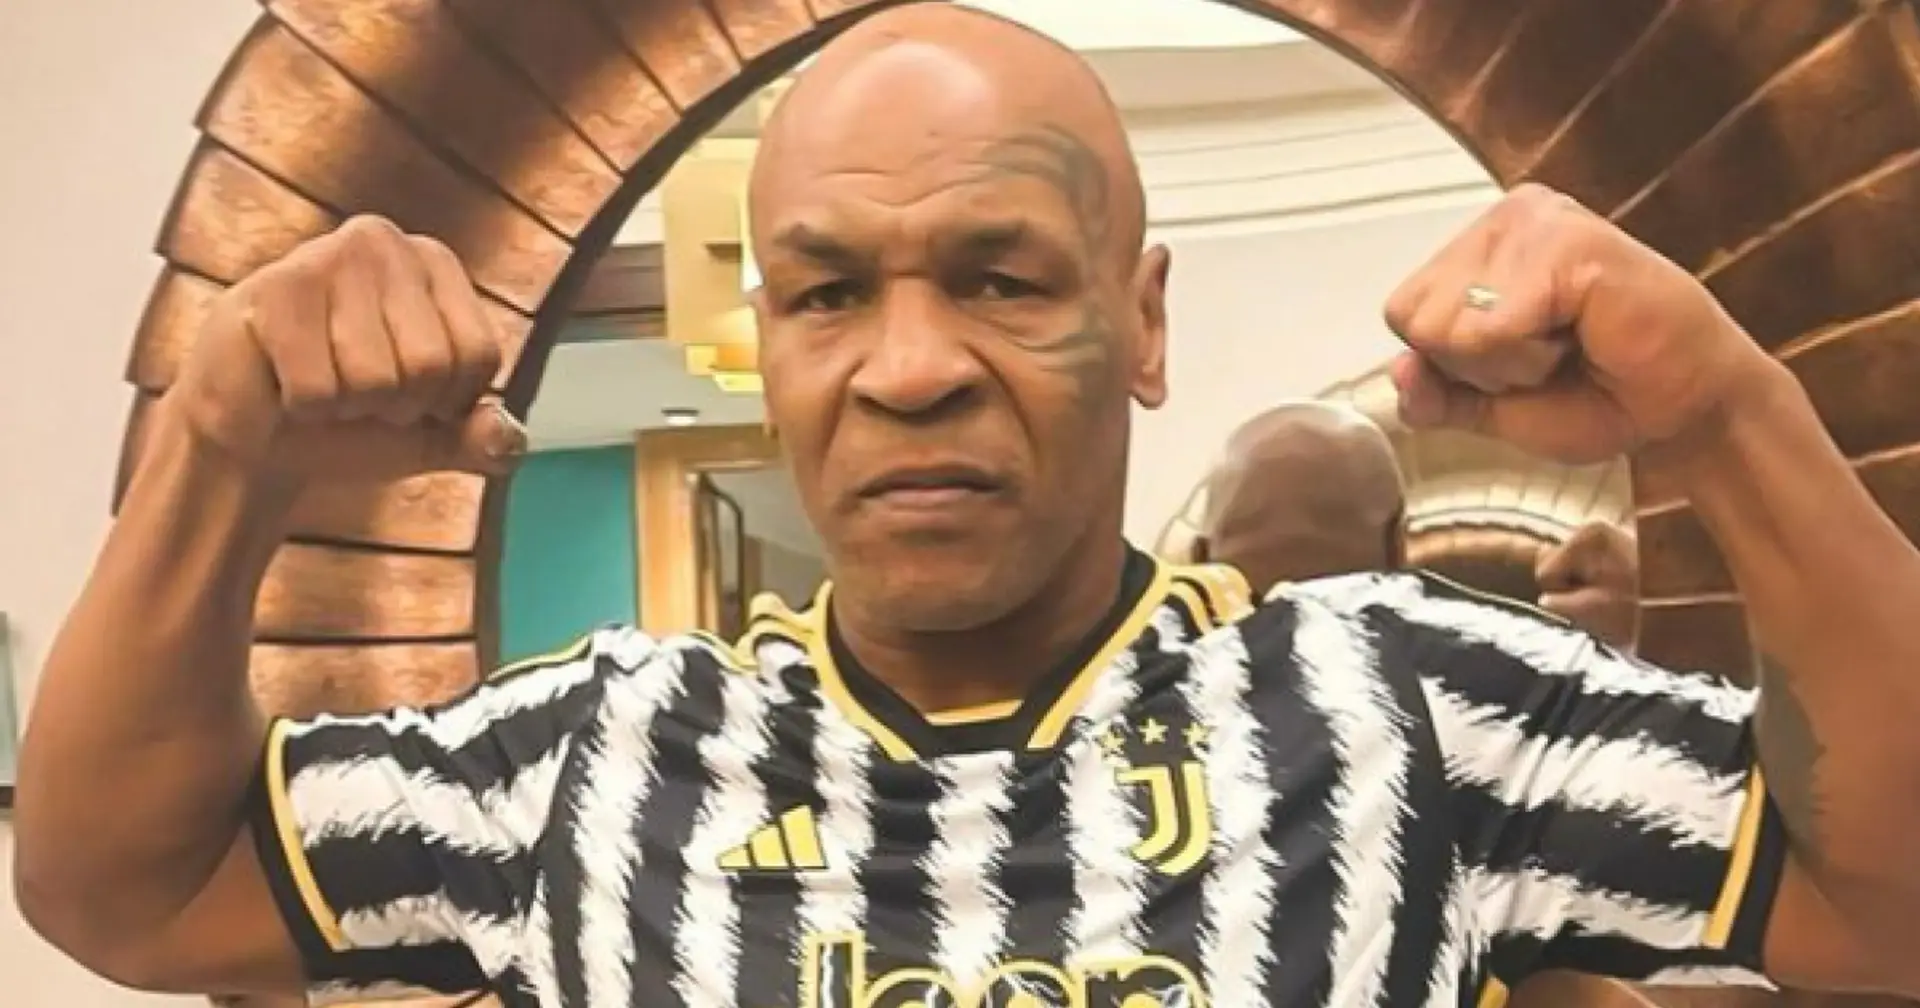 "L'entraînement va devenir beaucoup plus difficile" : Mike Tyson pose sous le maillot de la Juventus